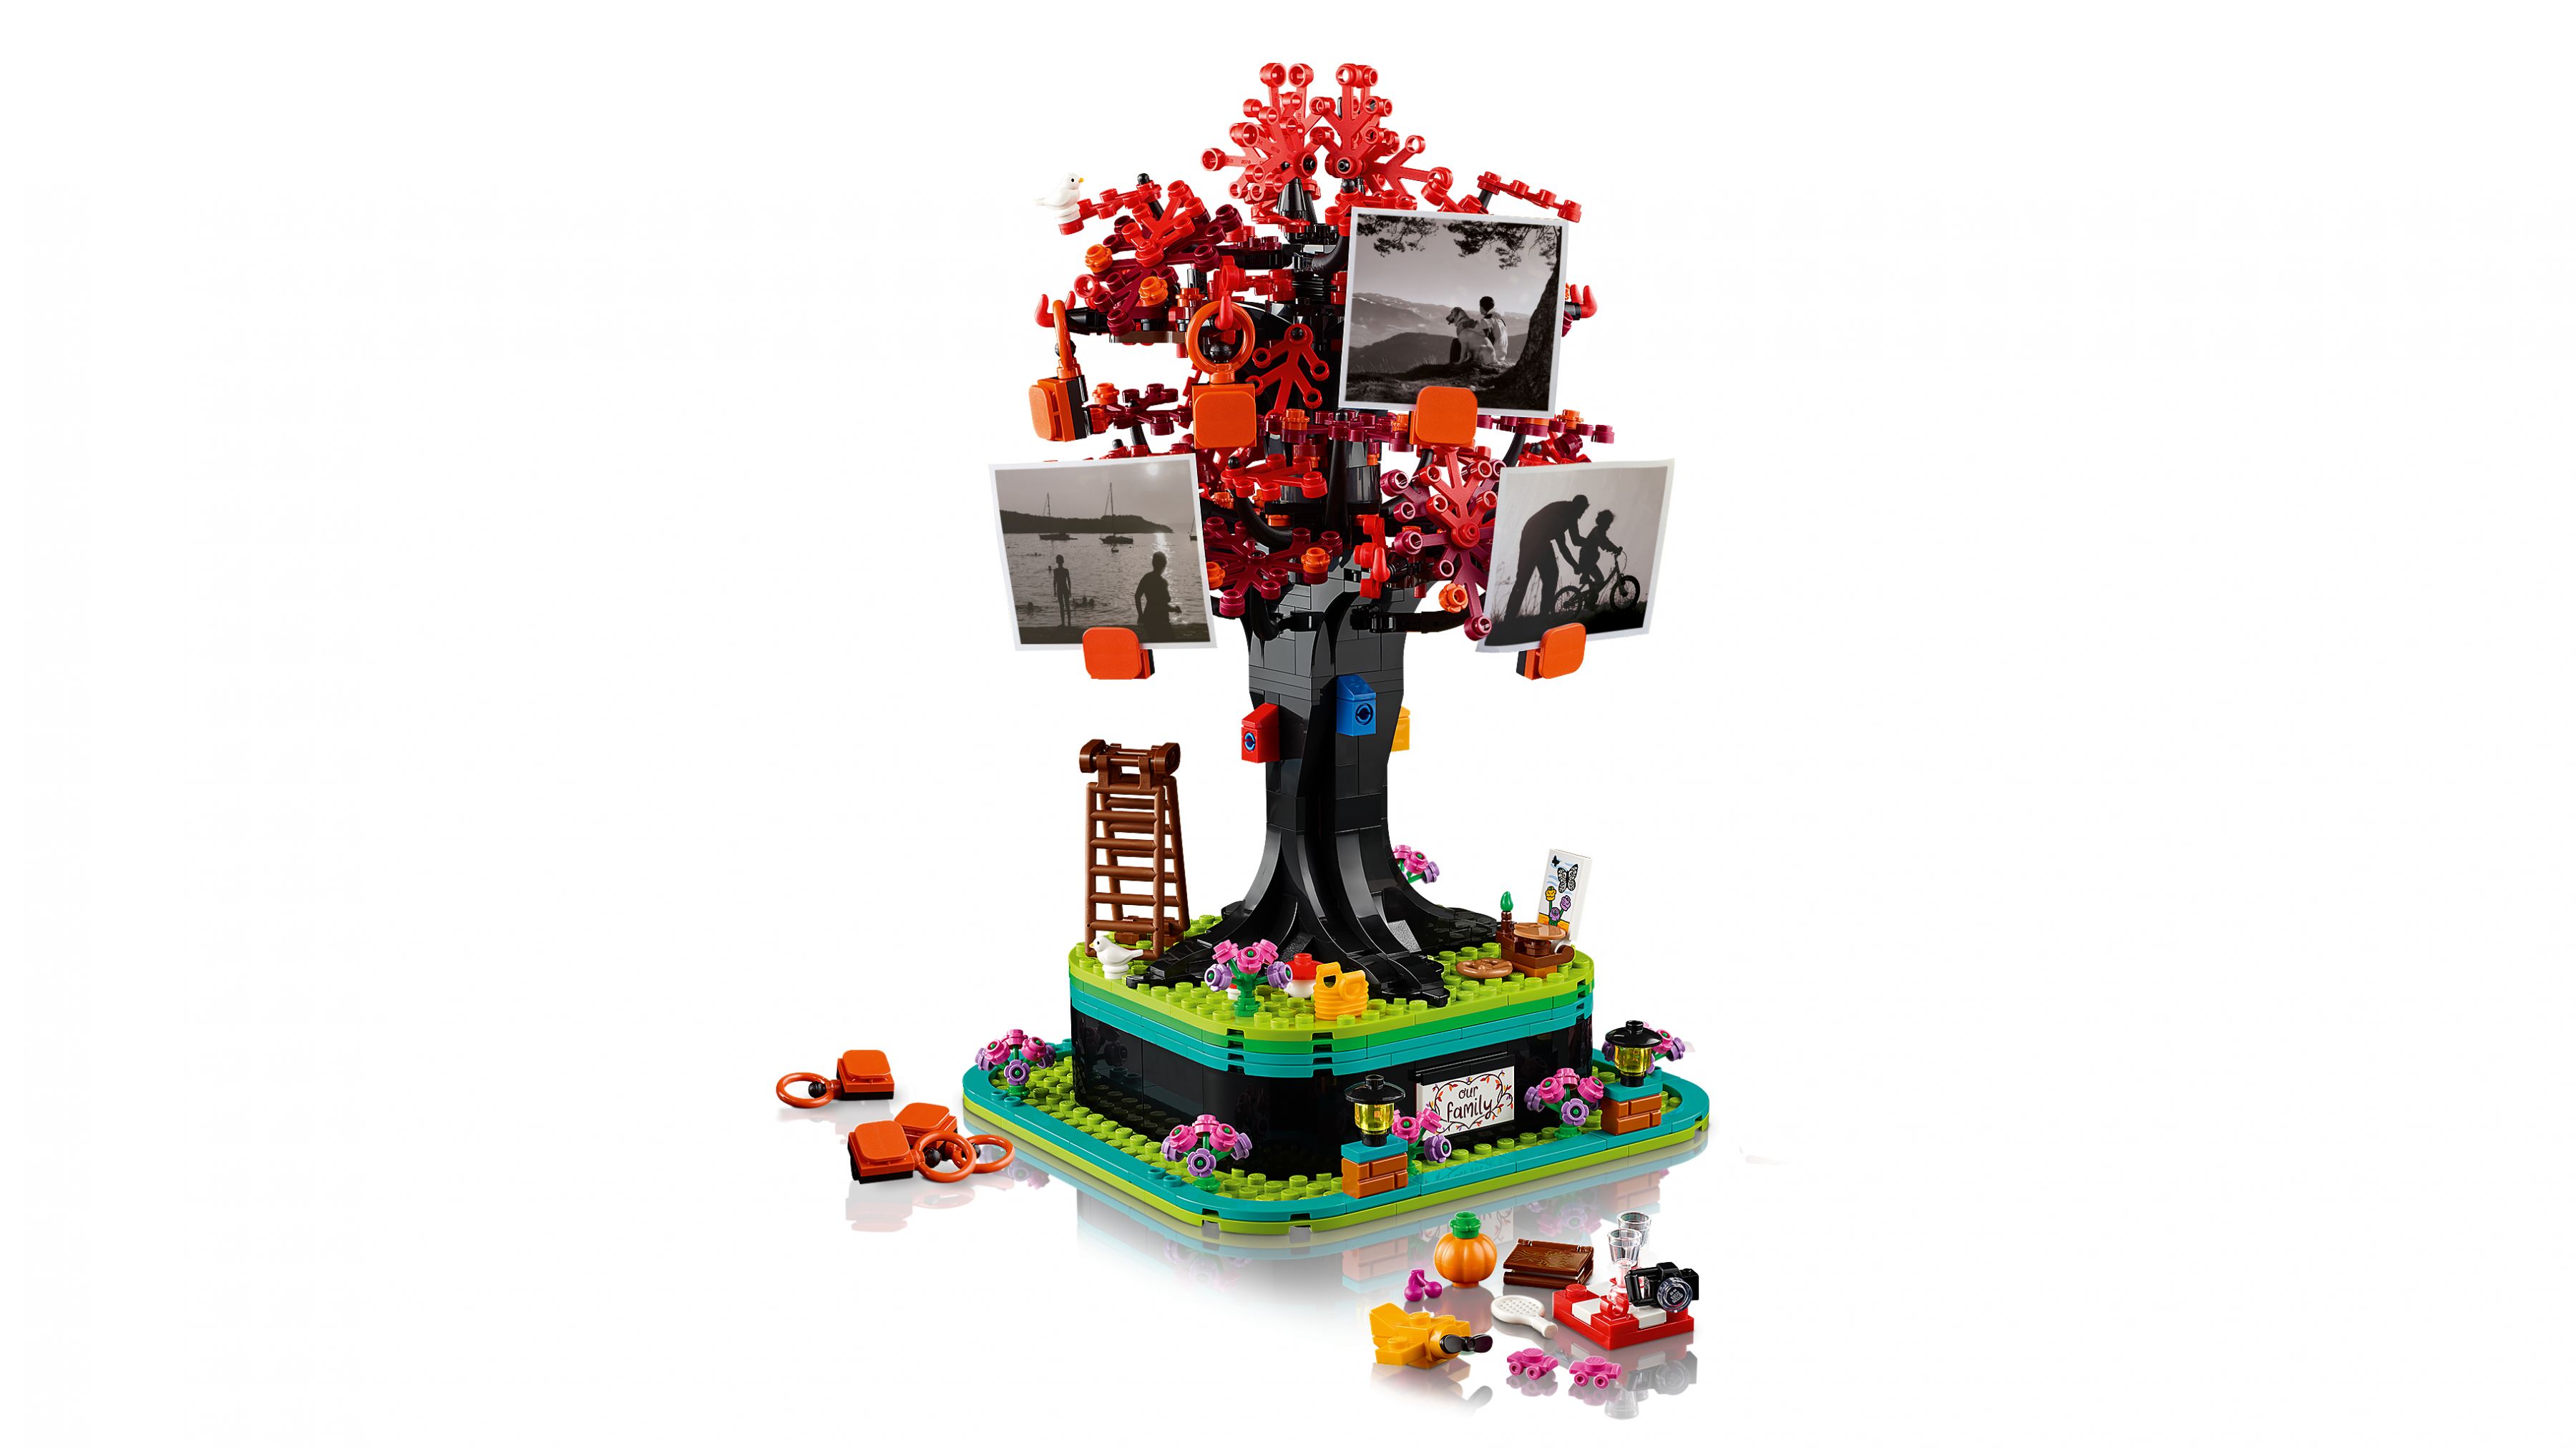 LEGO Ideas 21346 Familienbaum LEGO_21346_WEB_SEC02_NOBG.jpg